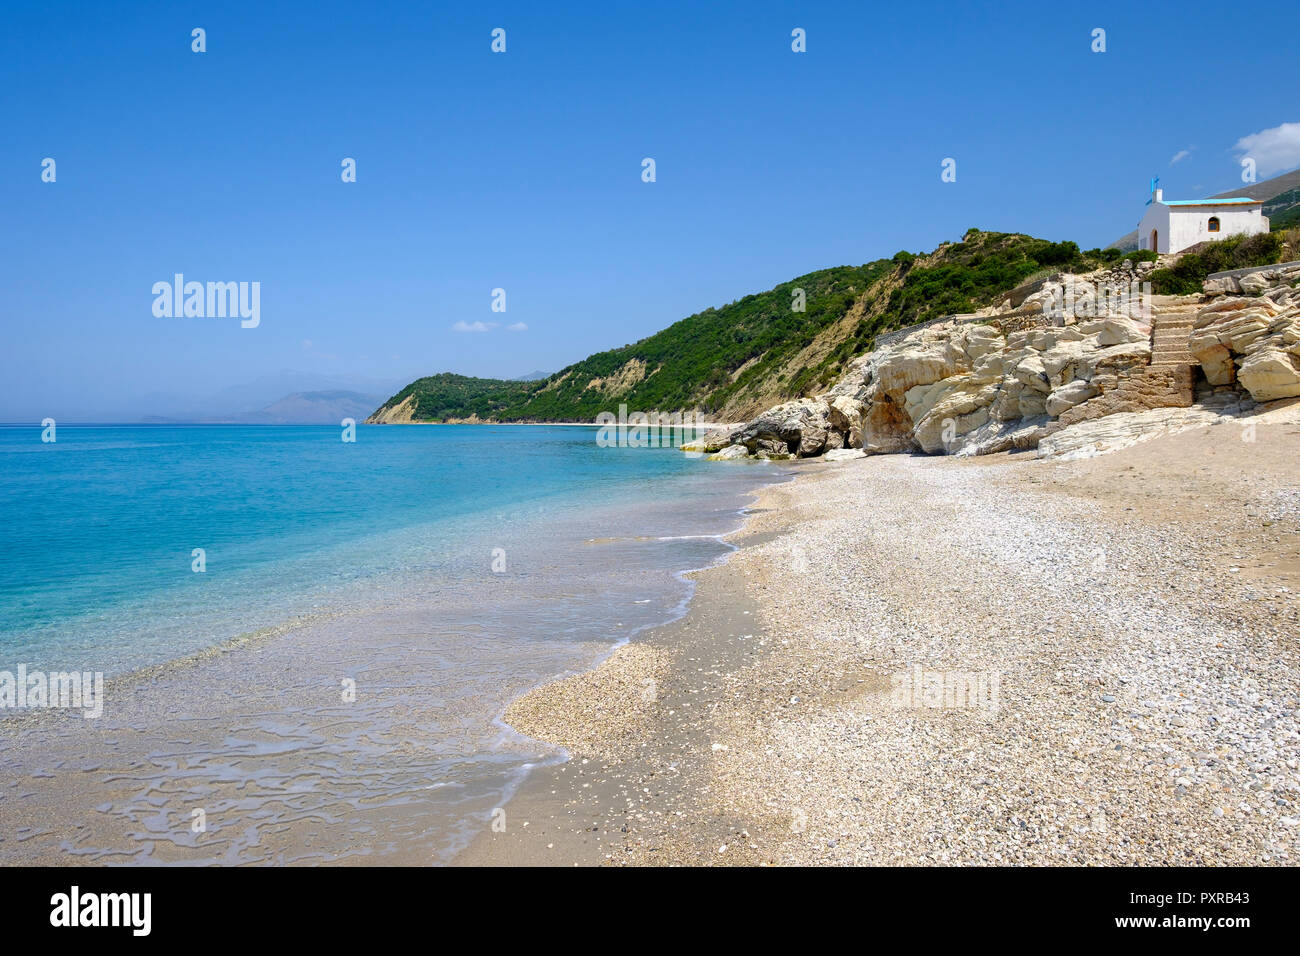 Albanien, Grafschaft, Strand in der Nähe von Vlore Lukova, Albanischen Riviera, Ionisches Meer, Plazhi Shpella Stockfoto